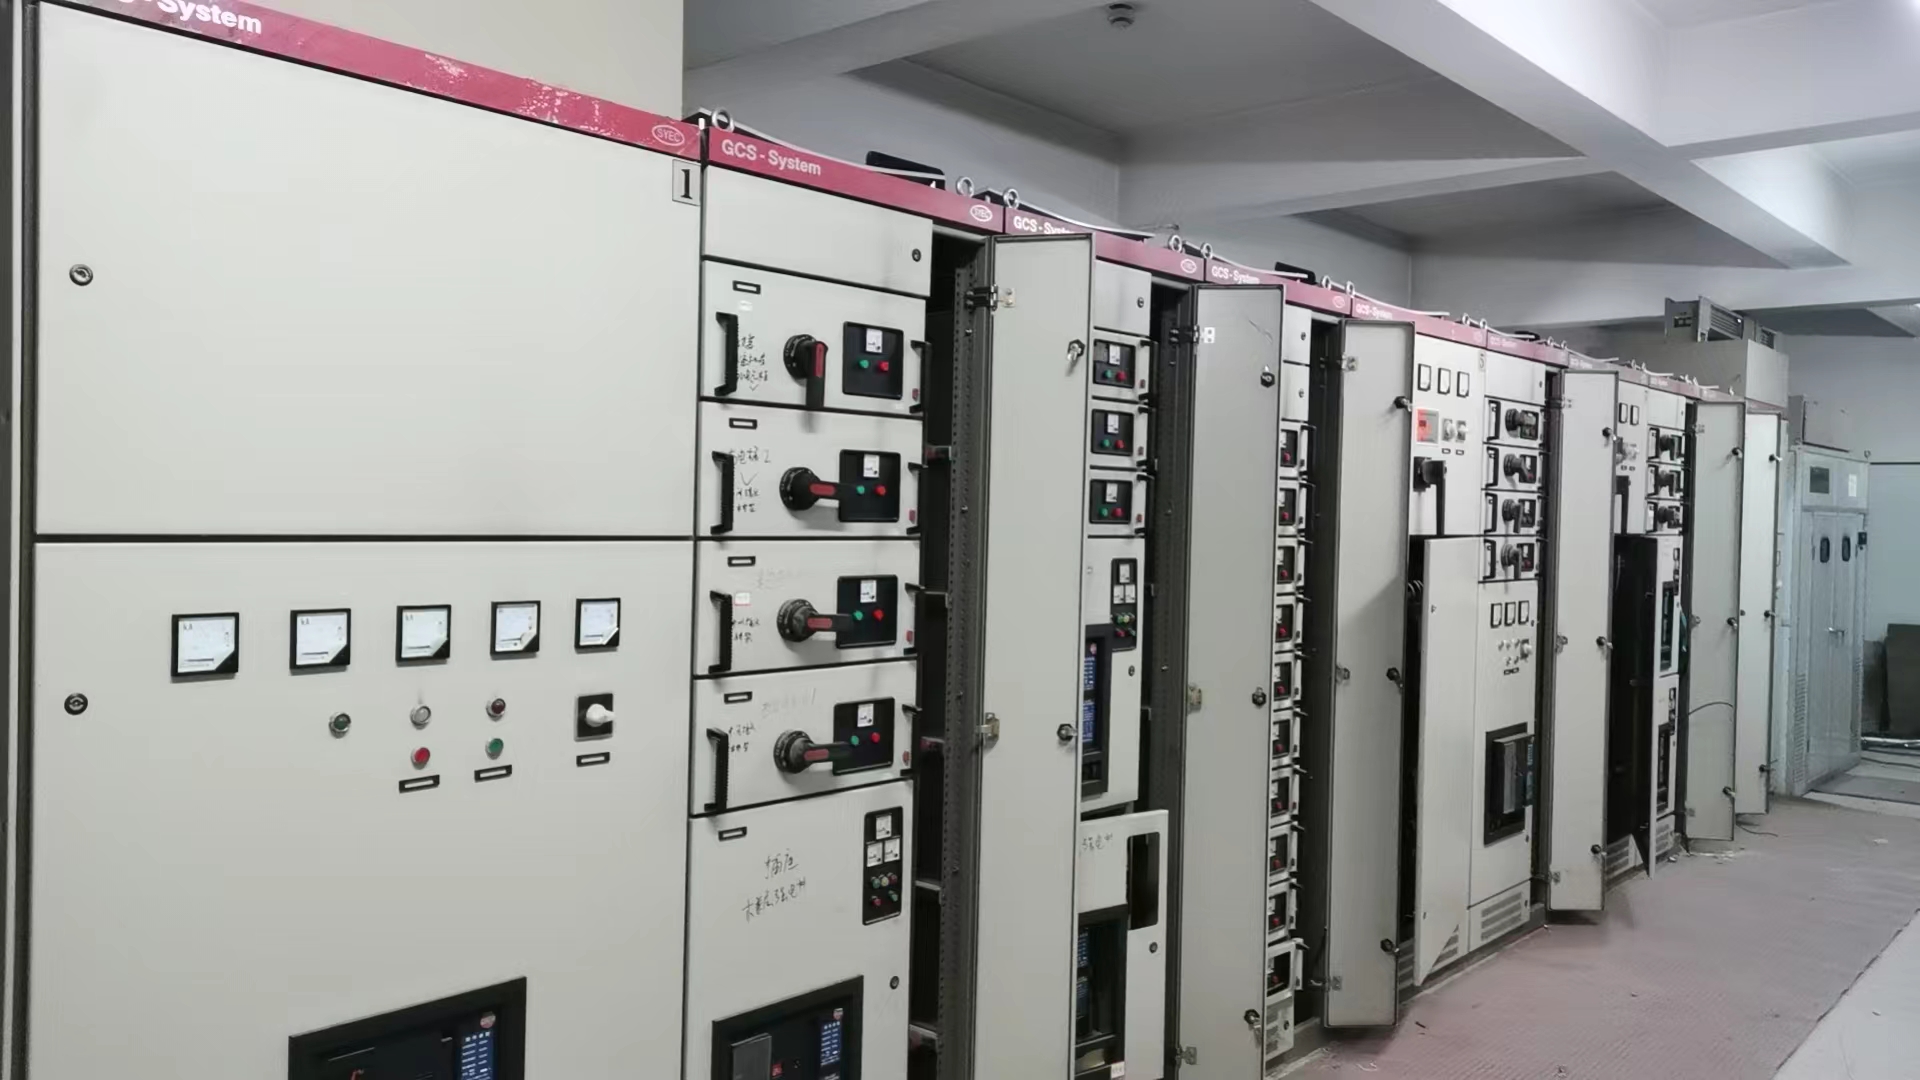 金华市资产管理公司报废配电房电器设备一批出售招标